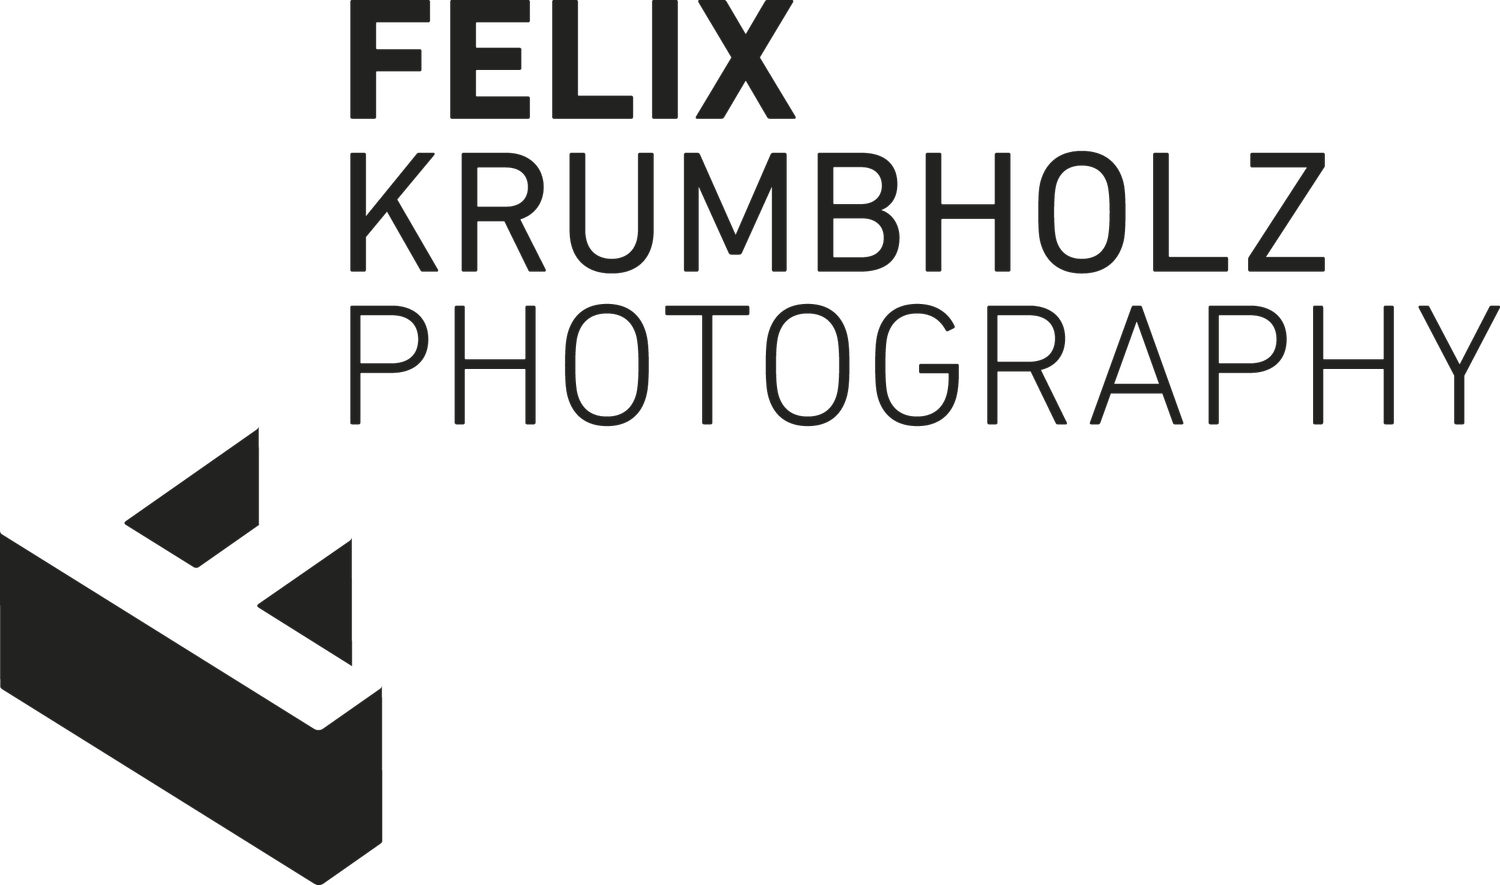 FELIX KRUMBHOLZ PHOTOGRAPHY